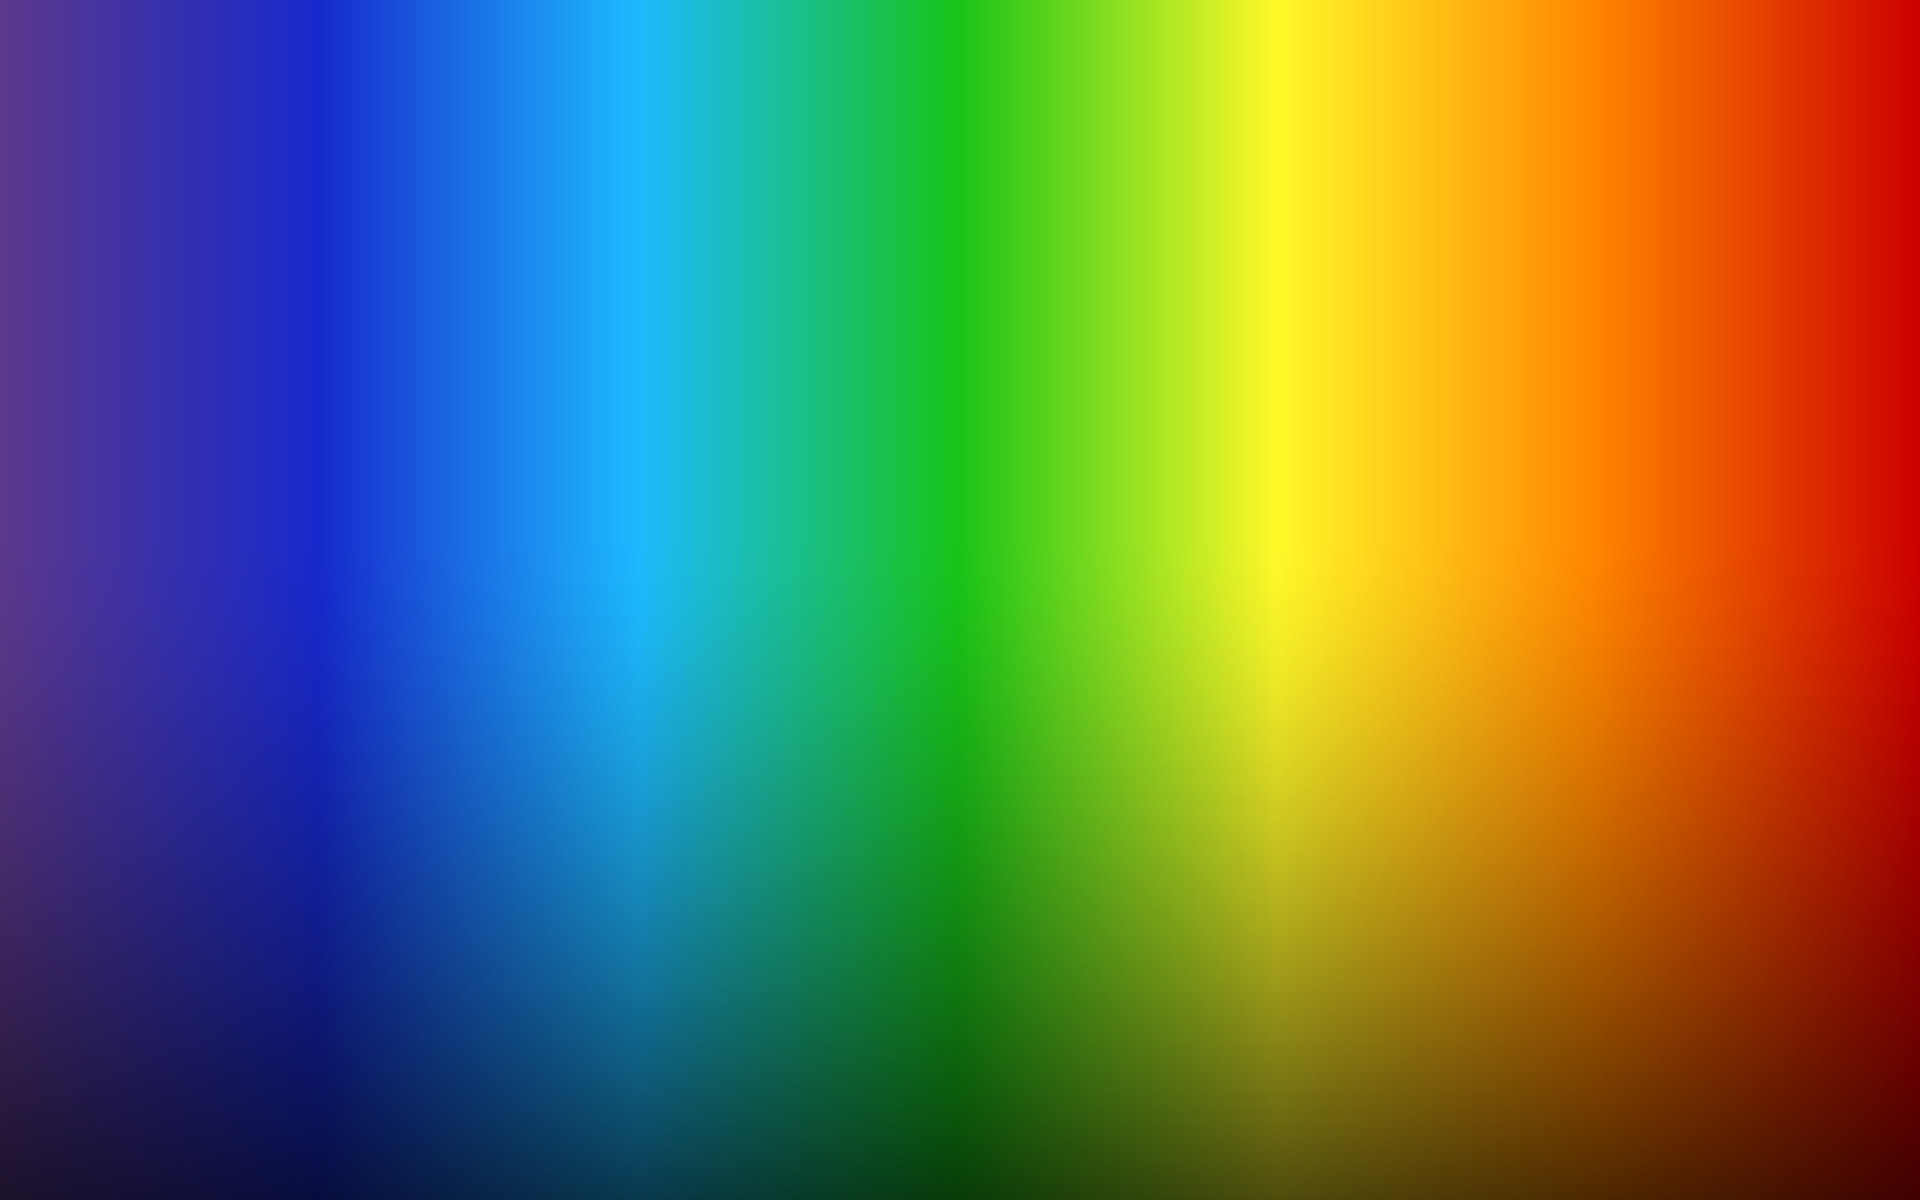 Hình nền đa màu sắc cầu vồng là một lựa chọn tuyệt vời để tạo điểm nhấn cho màn hình điện thoại hay máy tính của bạn. Màu sắc đa dạng và sống động tạo nên một hiệu ứng vô cùng đẹp mắt và lôi cuốn. Hãy xem ảnh về hình nền đa màu sắc cầu vồng để trải nghiệm.